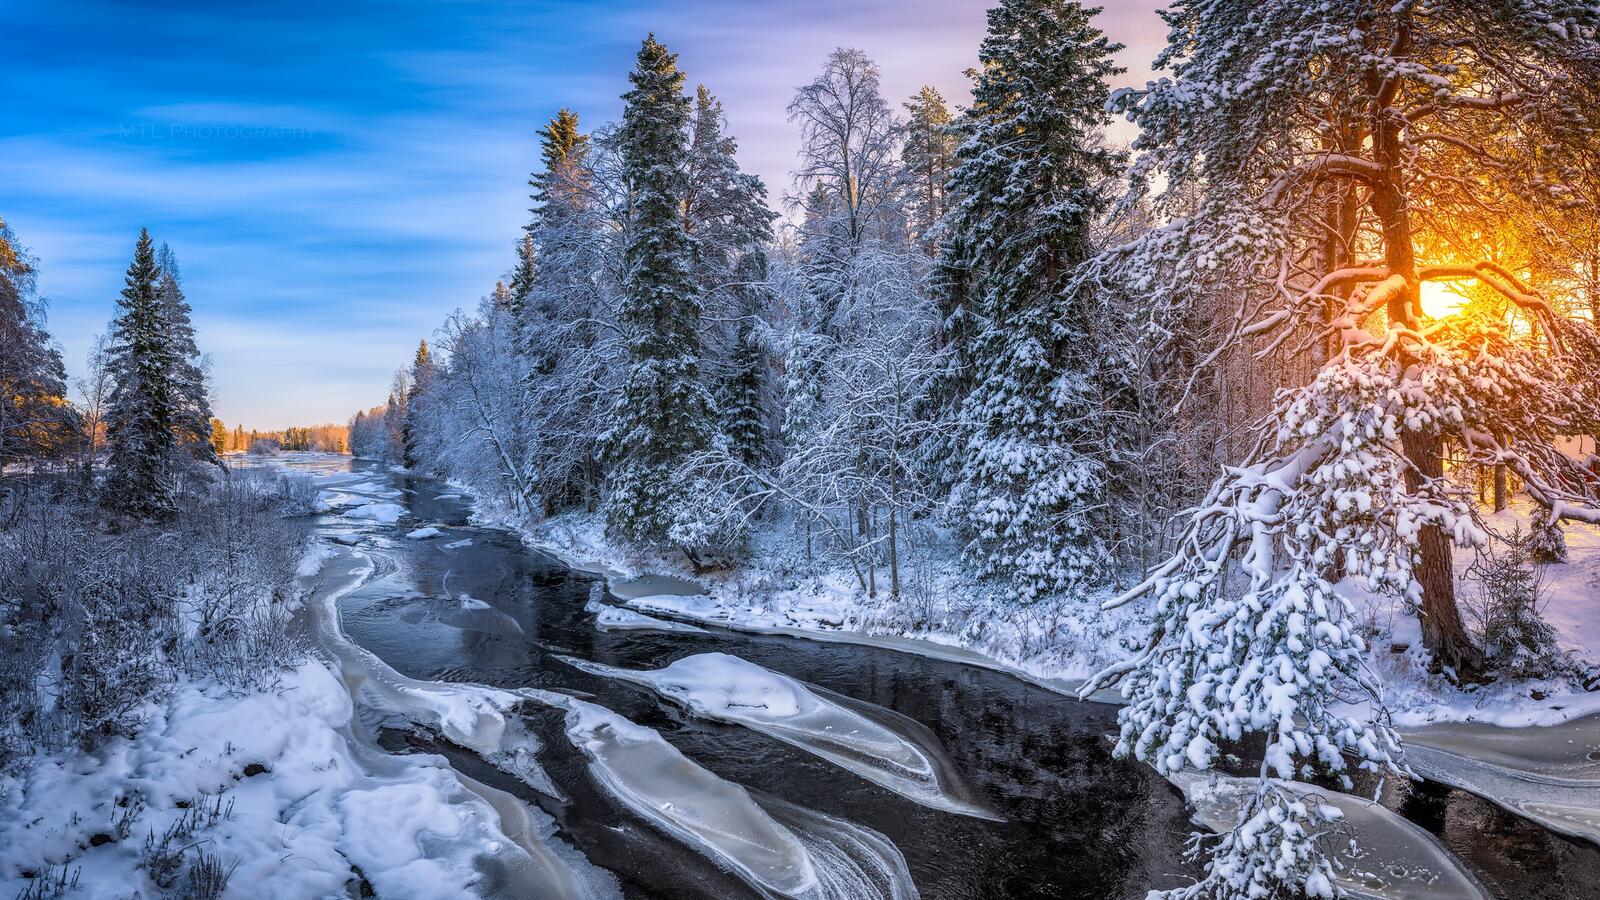 Бесплатное фото Ручей со снежными берегами в лесу на закате